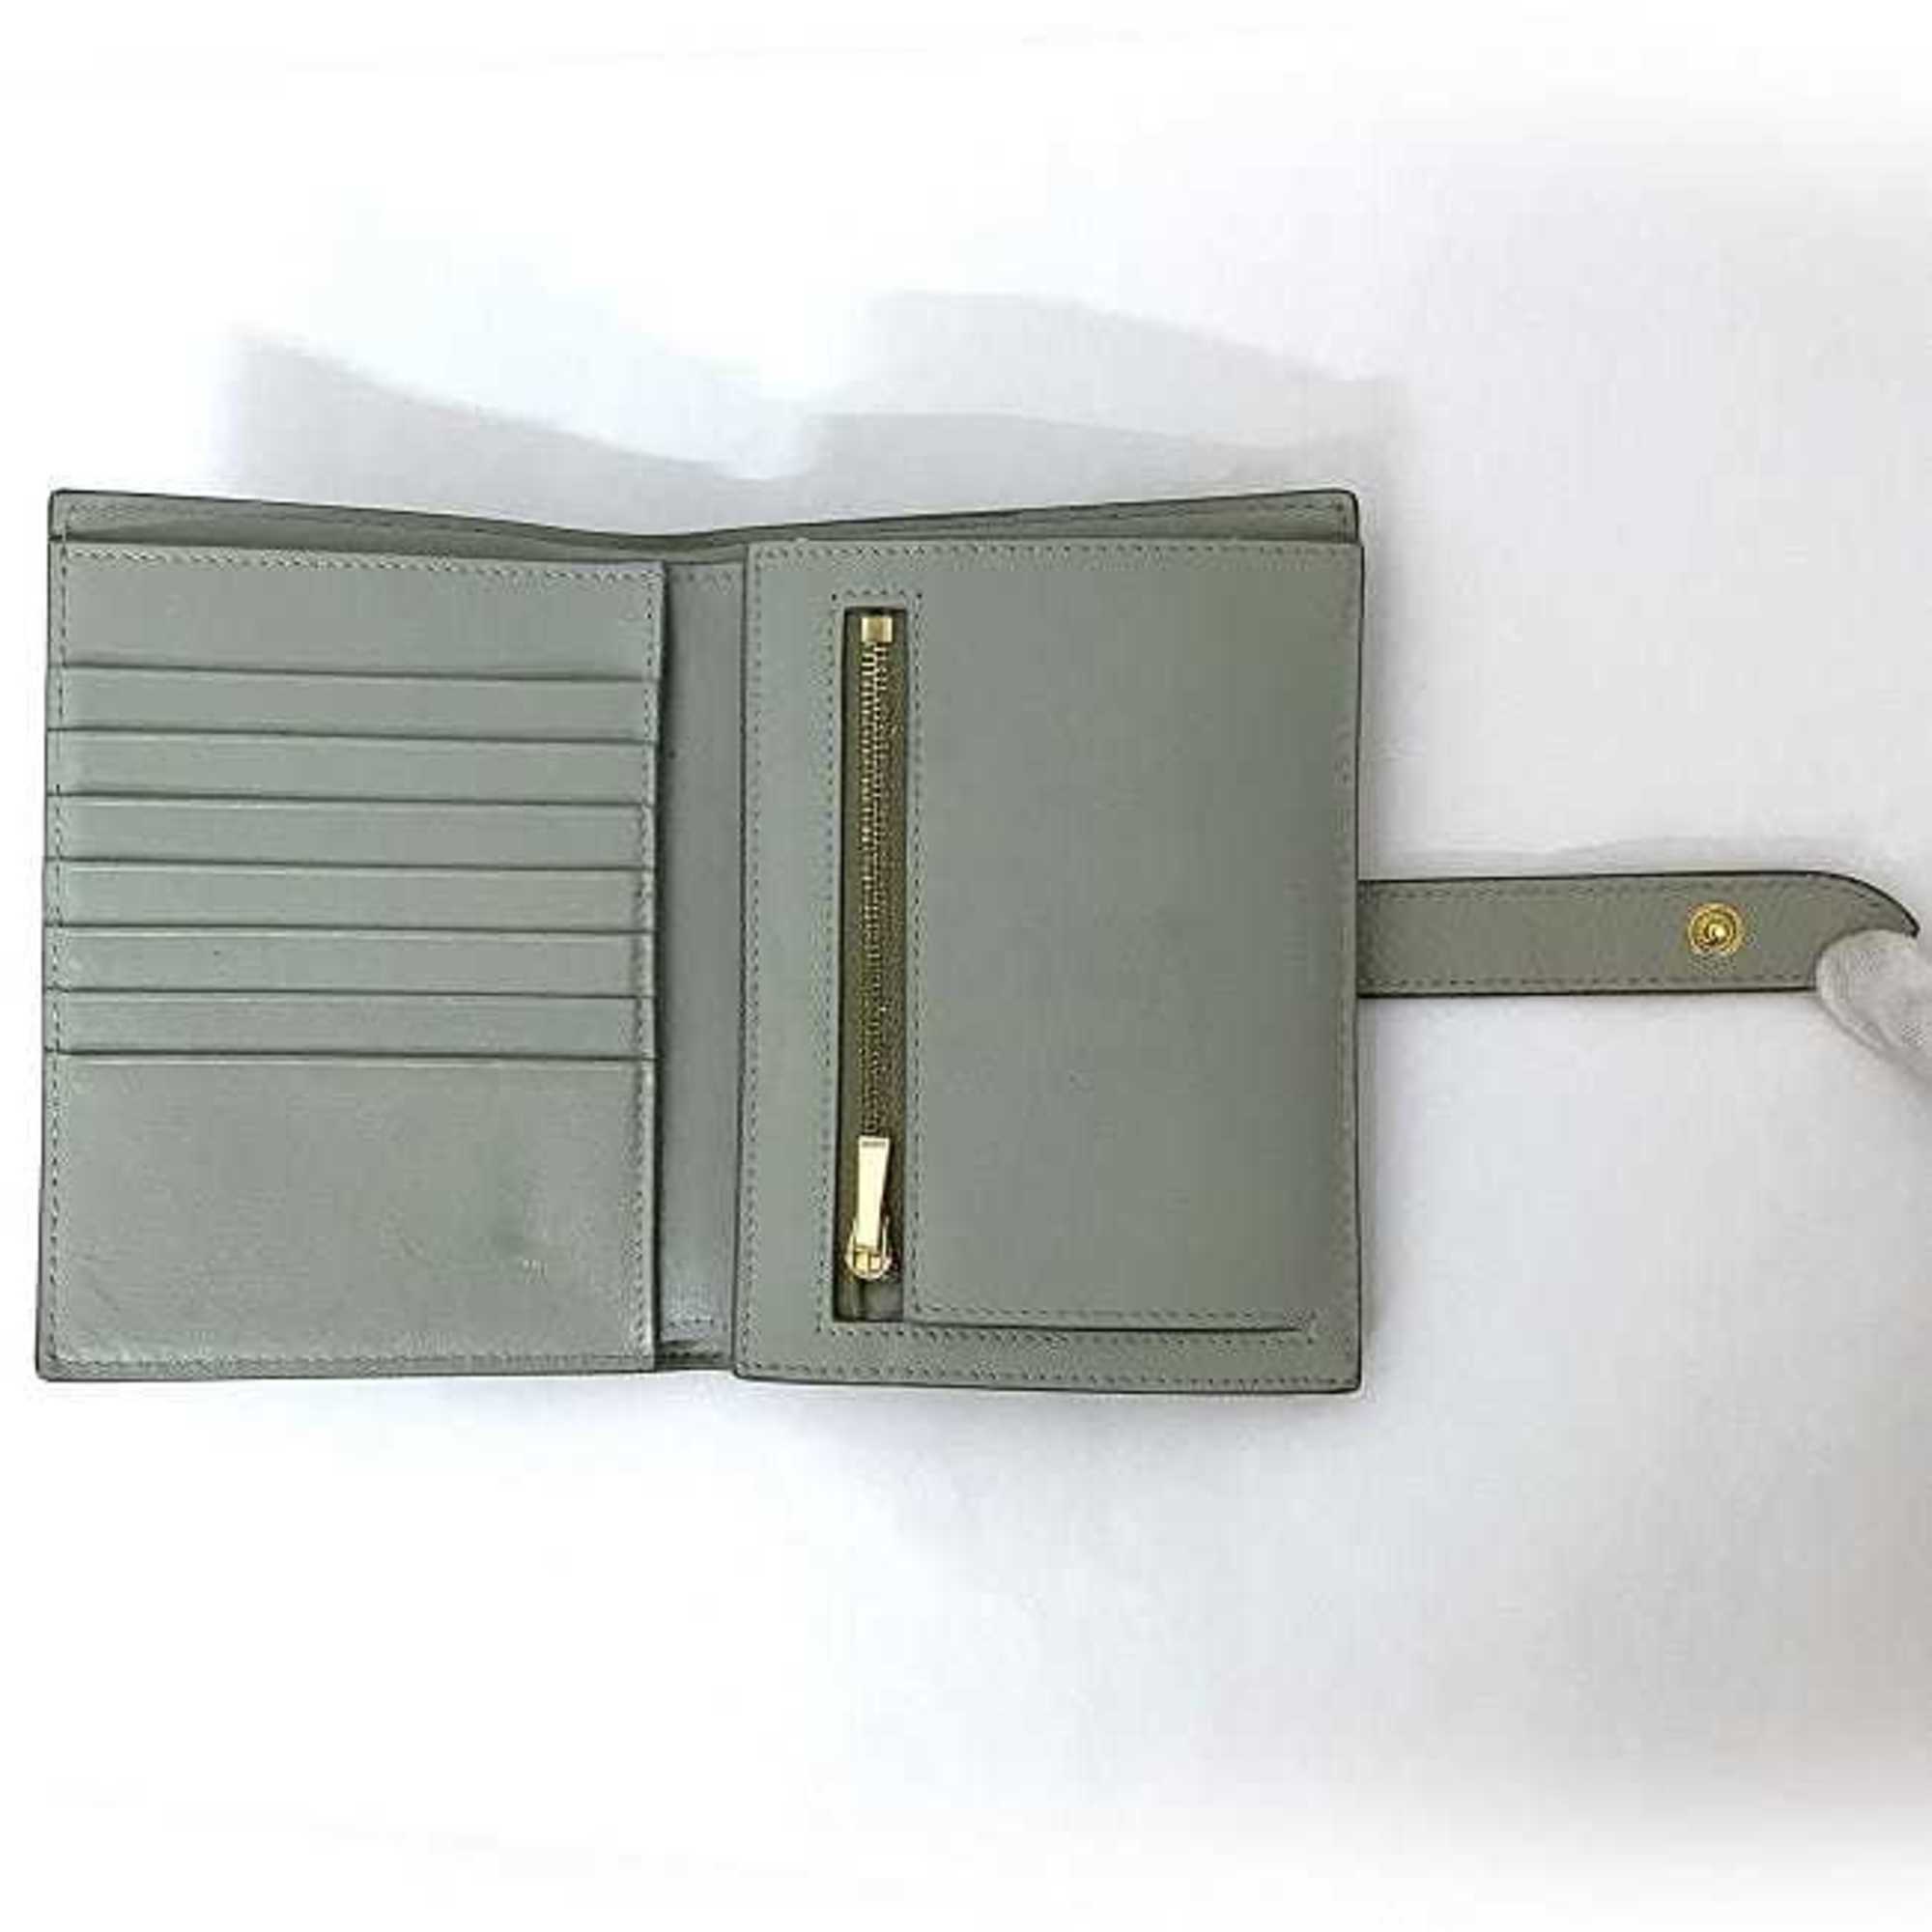 Celine wallet medium strap gray 10B64 3BRU 30VL folio leather CELINE bicolor smoky color ladies